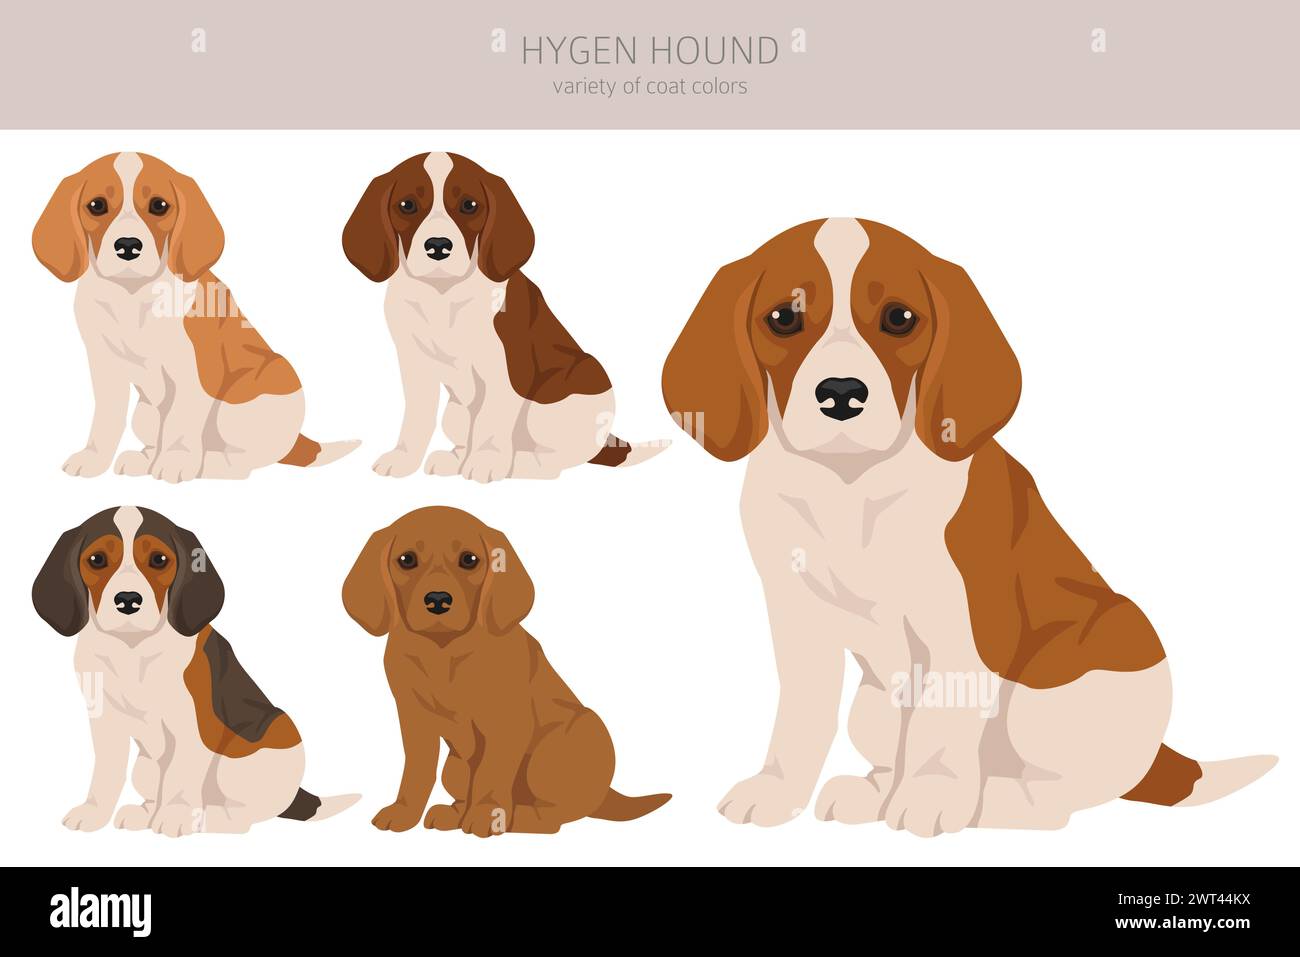 Cucciolo di cane Hygen. Pose diverse, set di colori per cappotti. Illustrazione vettoriale Illustrazione Vettoriale